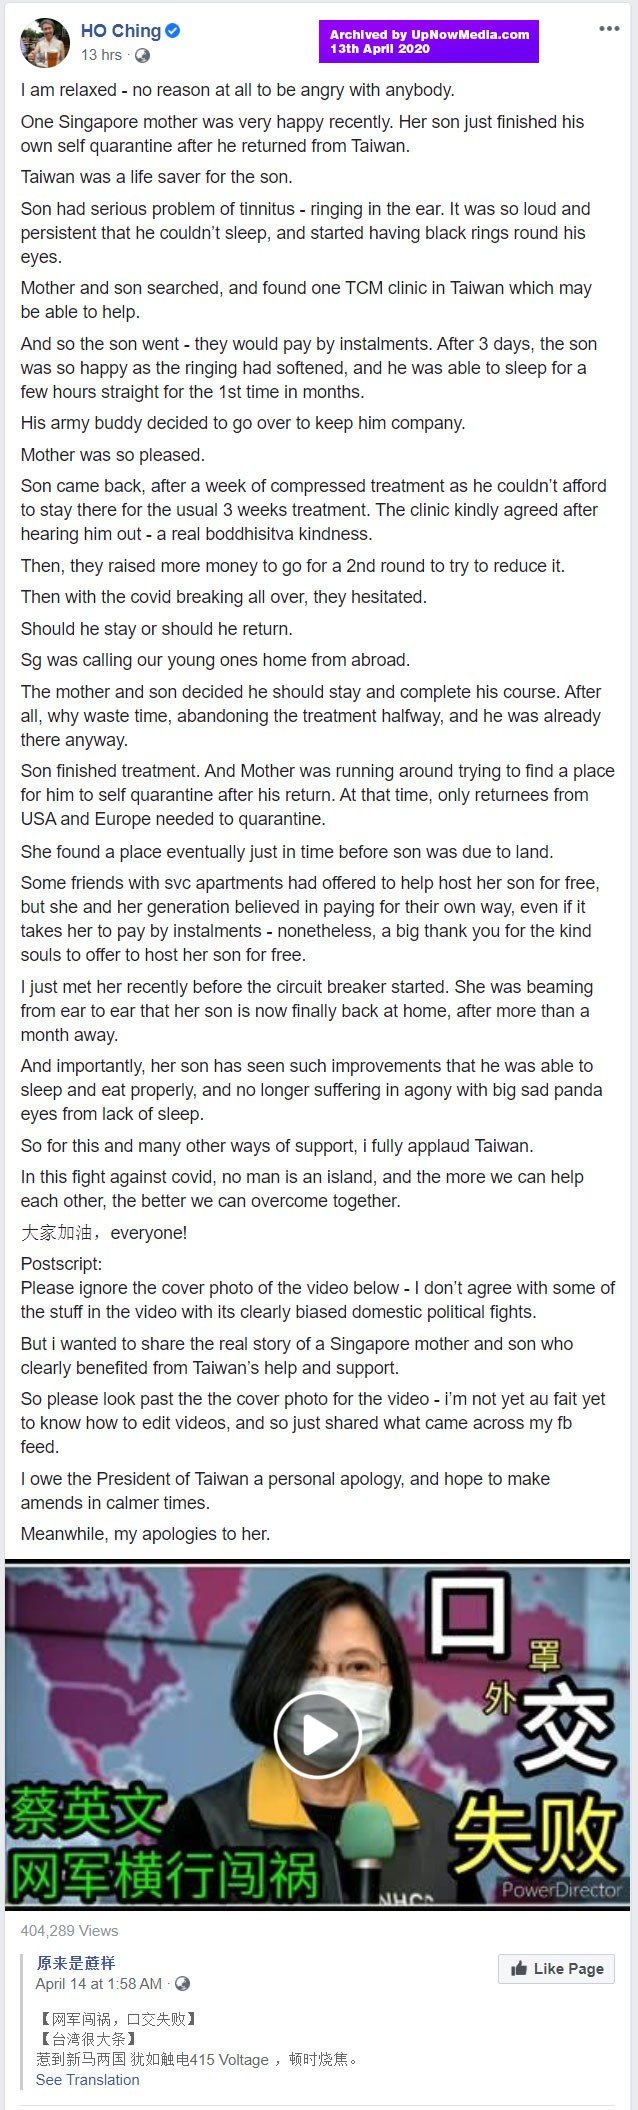 saga continues ho chings actual apology to taiwan